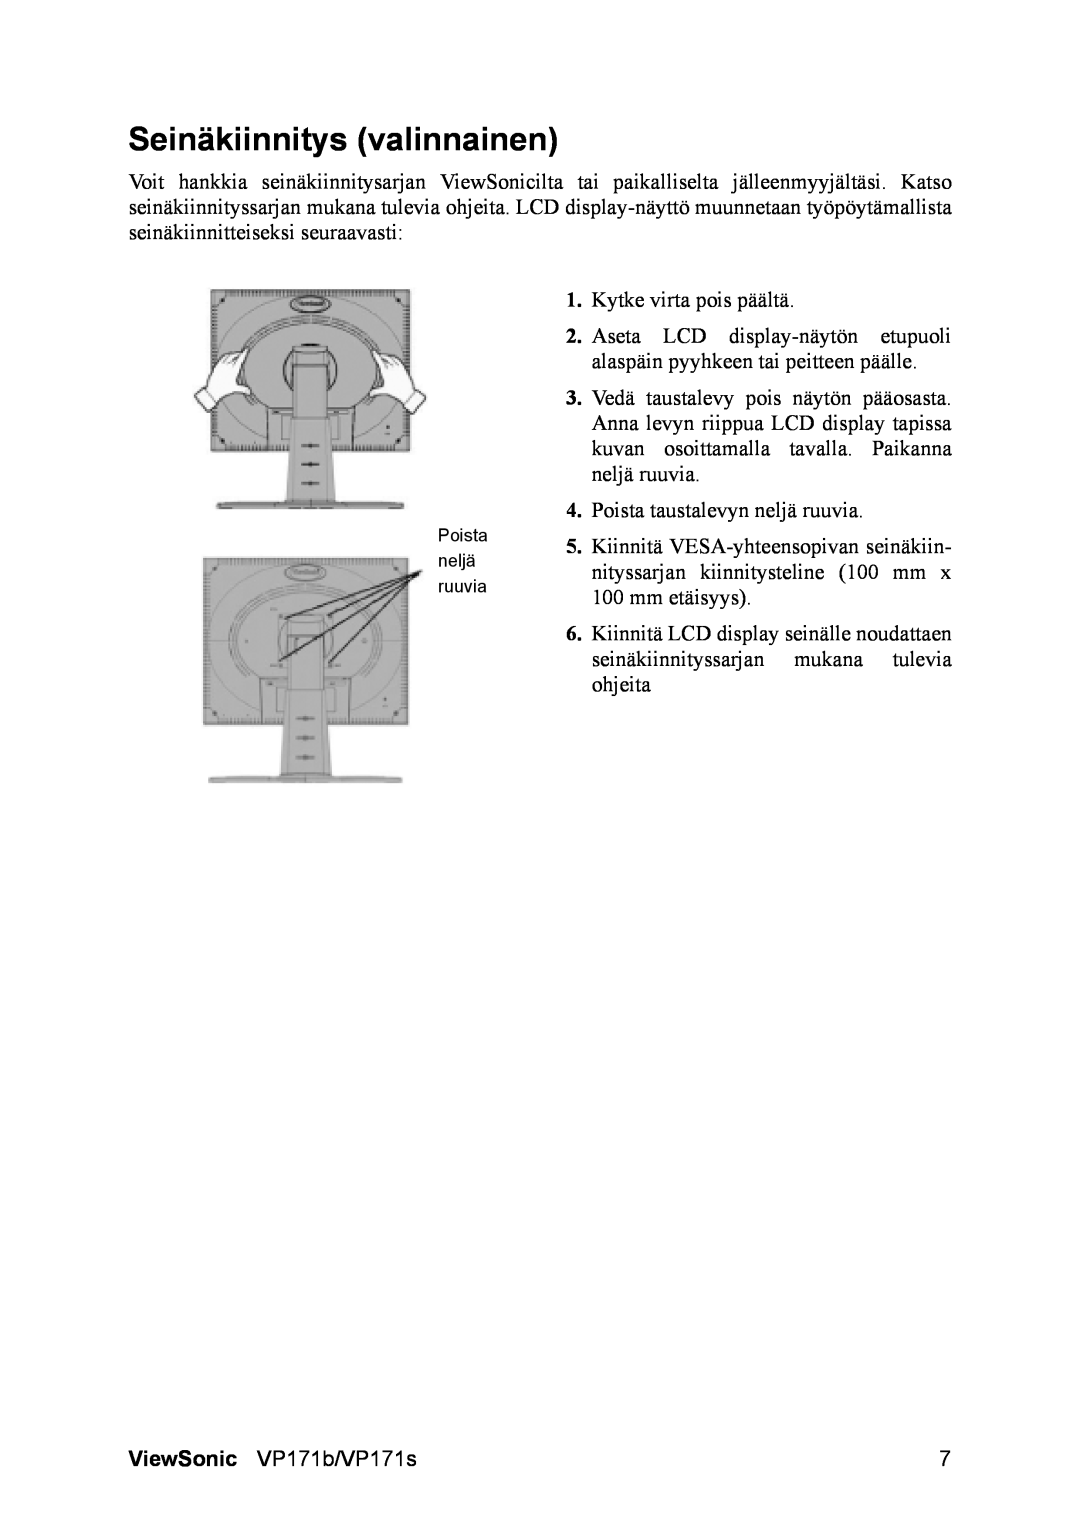 ViewSonic VP171b/VP171s manual Seinäkiinnitys valinnainen 